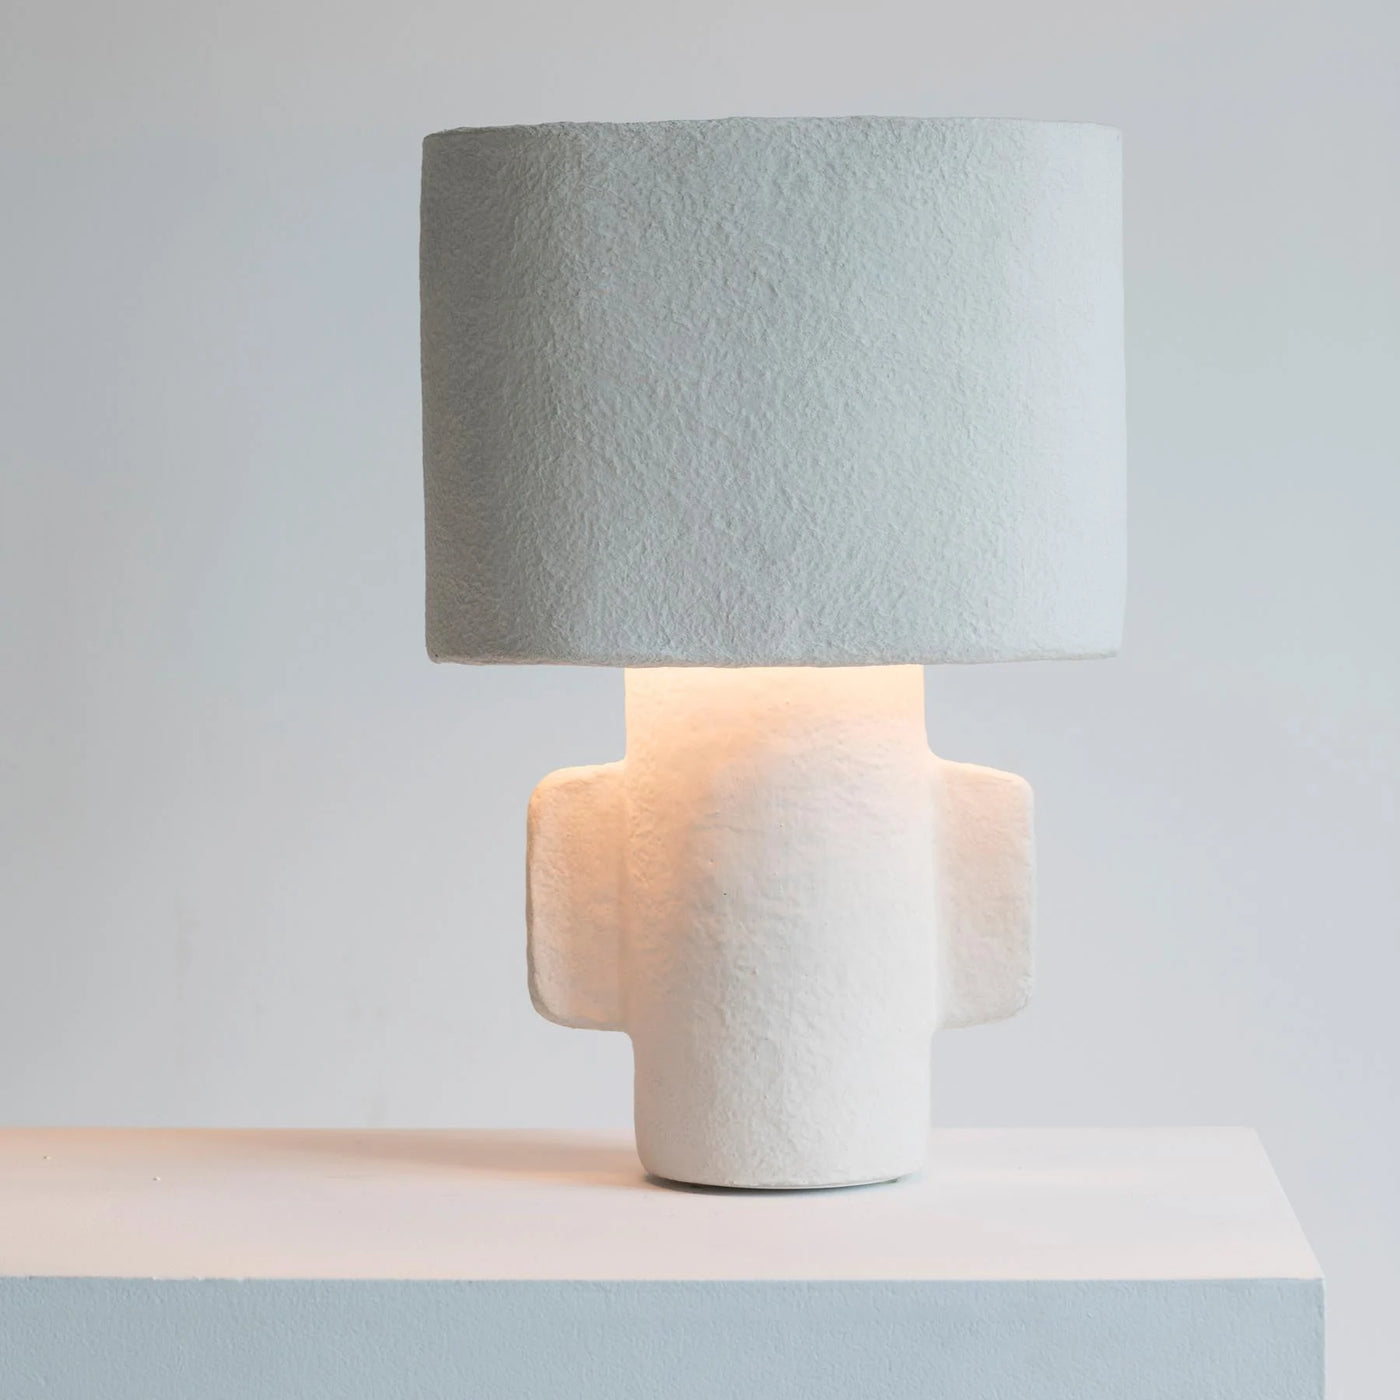 lamp – Etienne Interieur